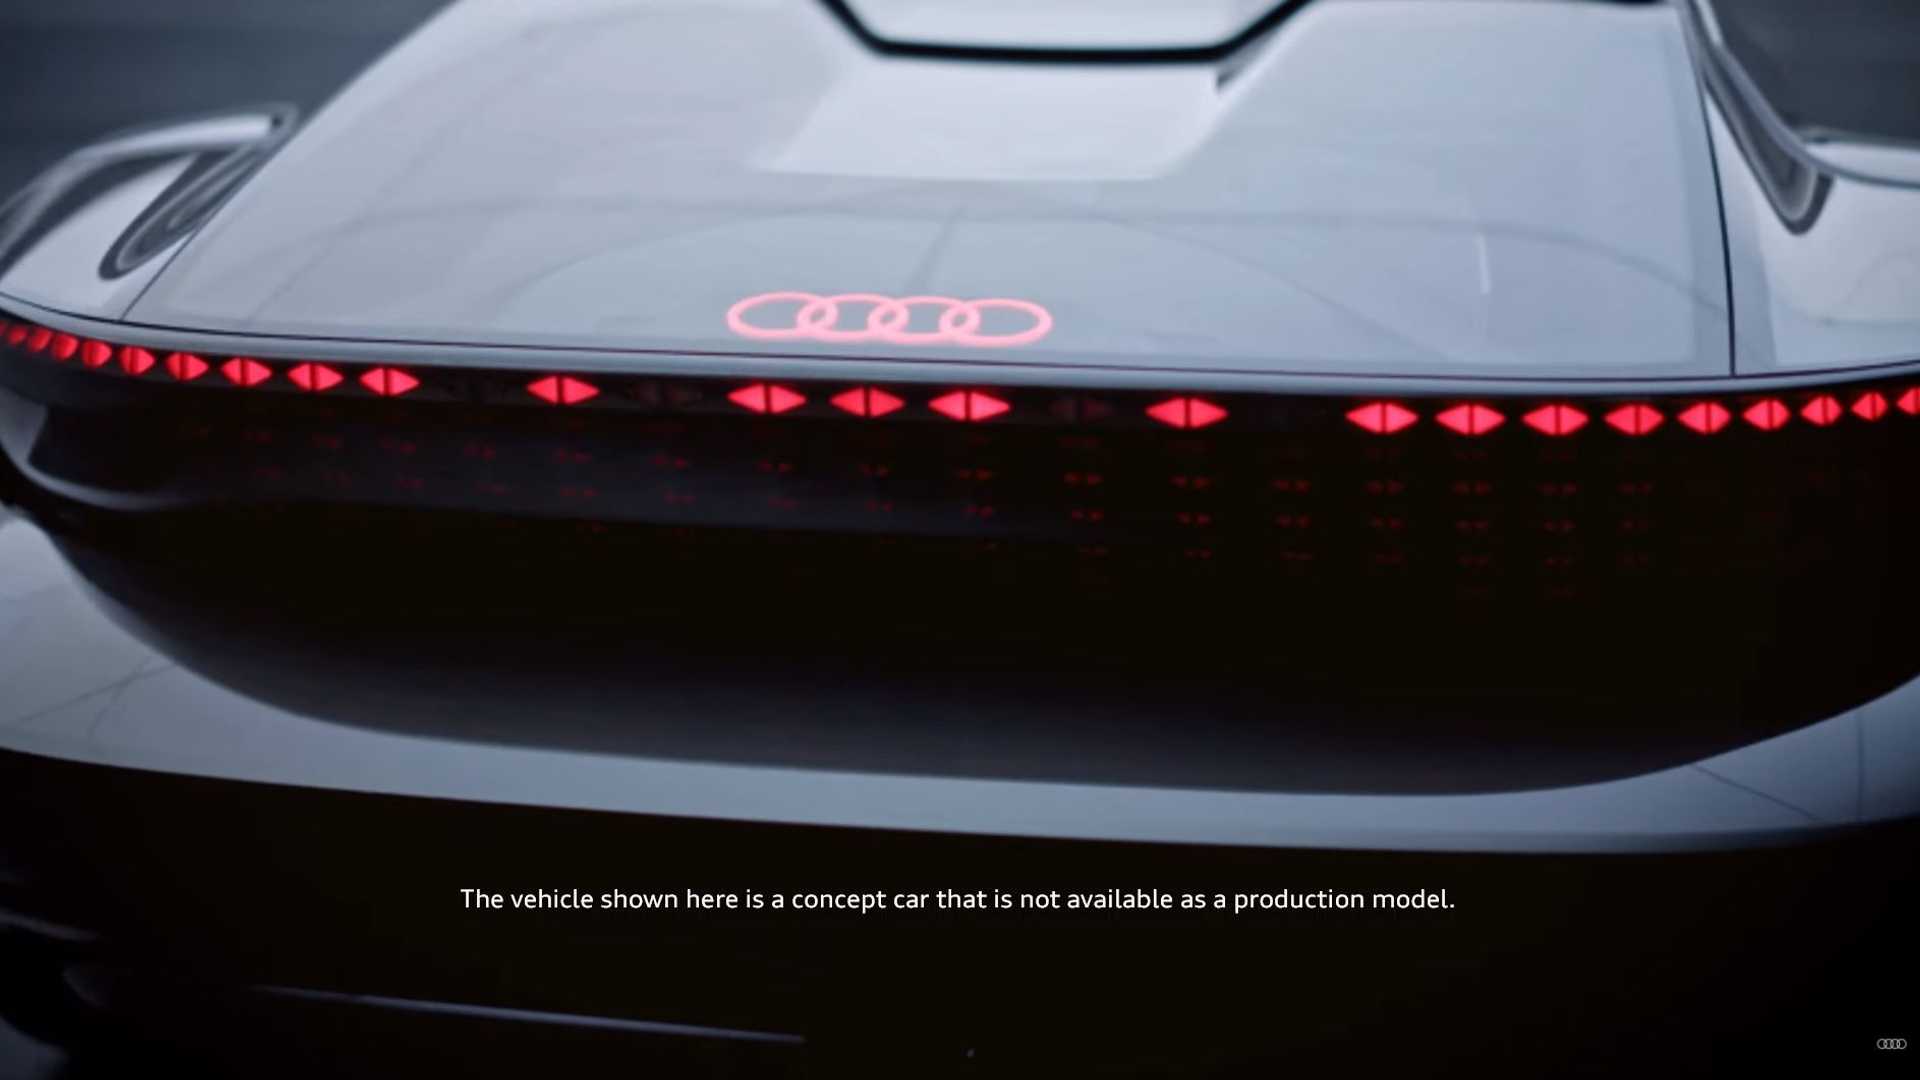 تازه ترین خودرو مفهومی آئودی (Audi) با نام skysphere، به گفته این کمپانی هم خودران و هم دارای راننده انسانی خواهد بود.